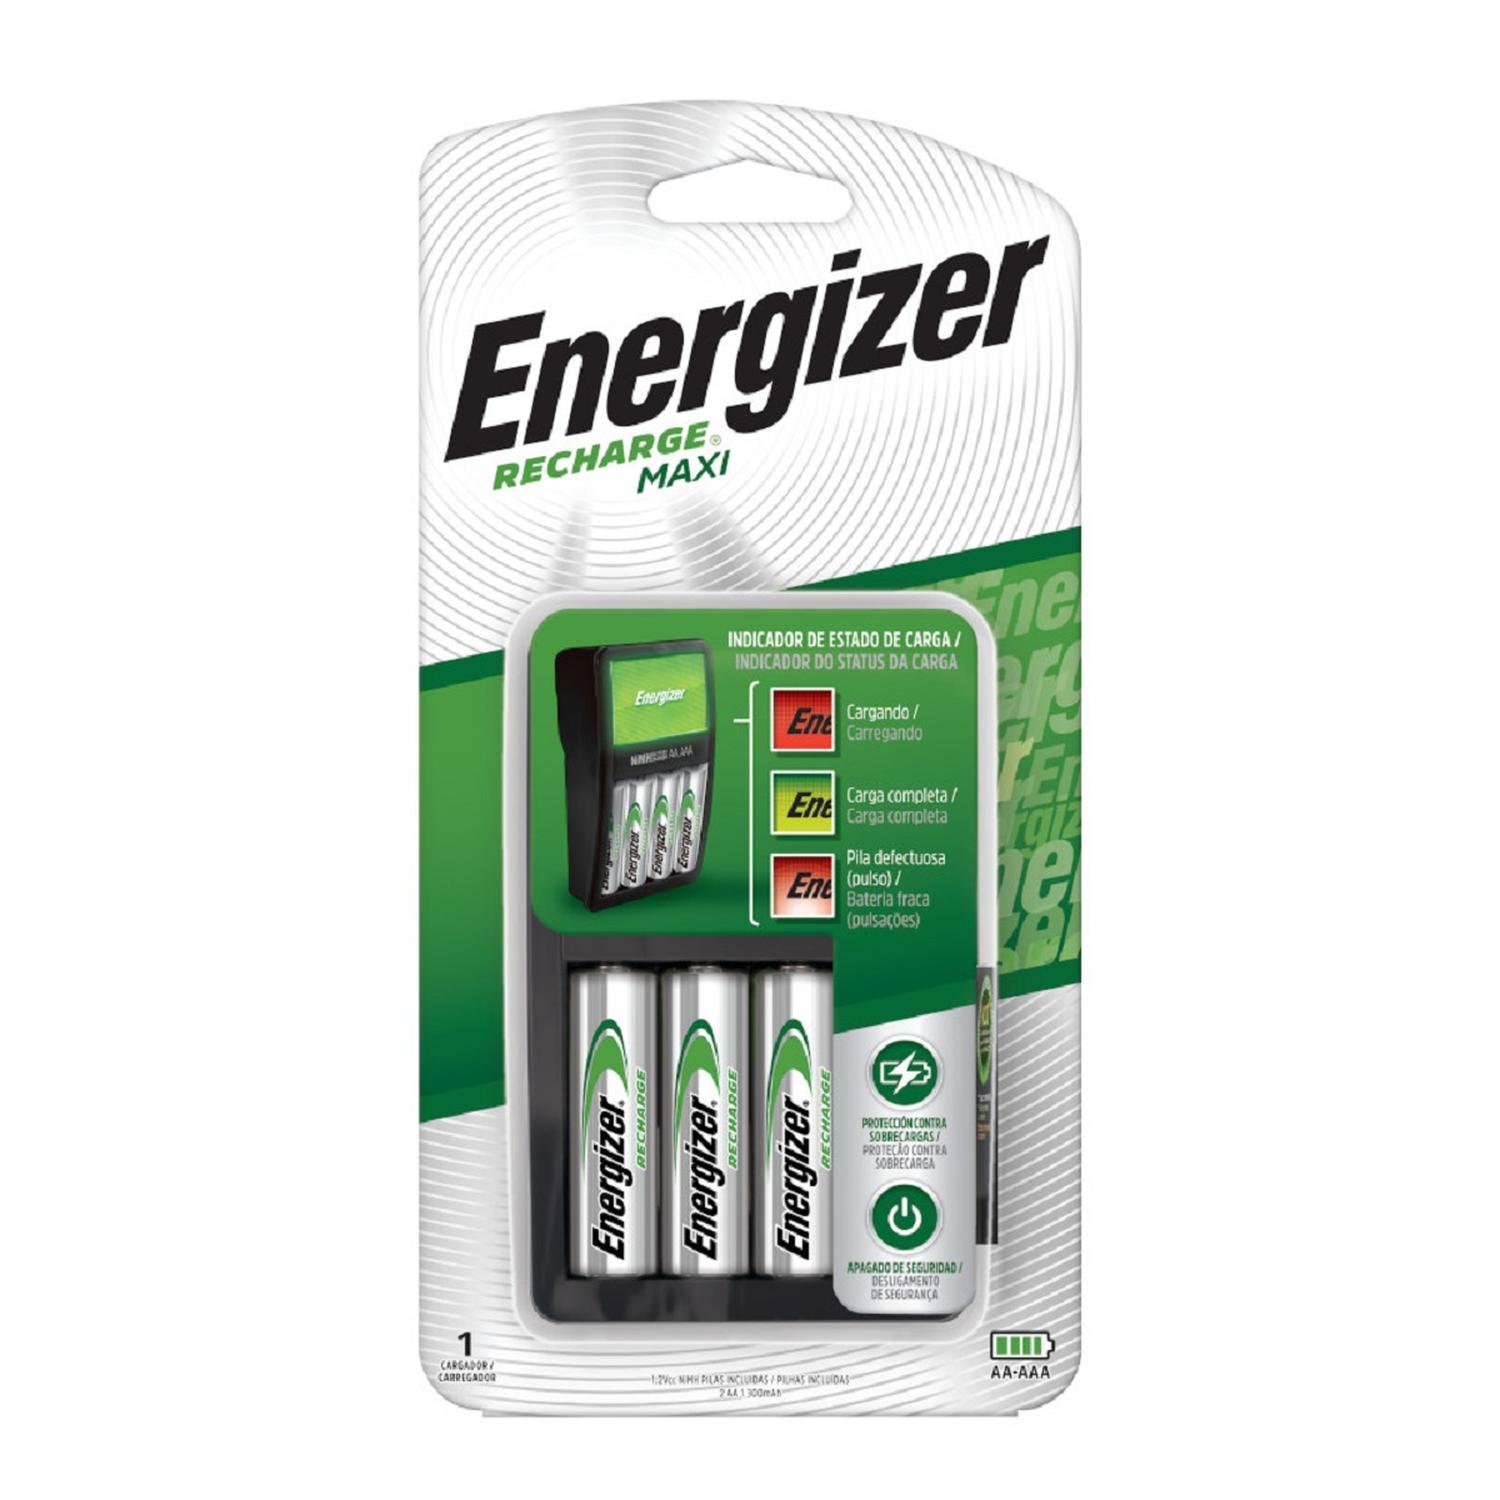 Cargador de Pilas MAXI Energizer + 8AAA Energizer